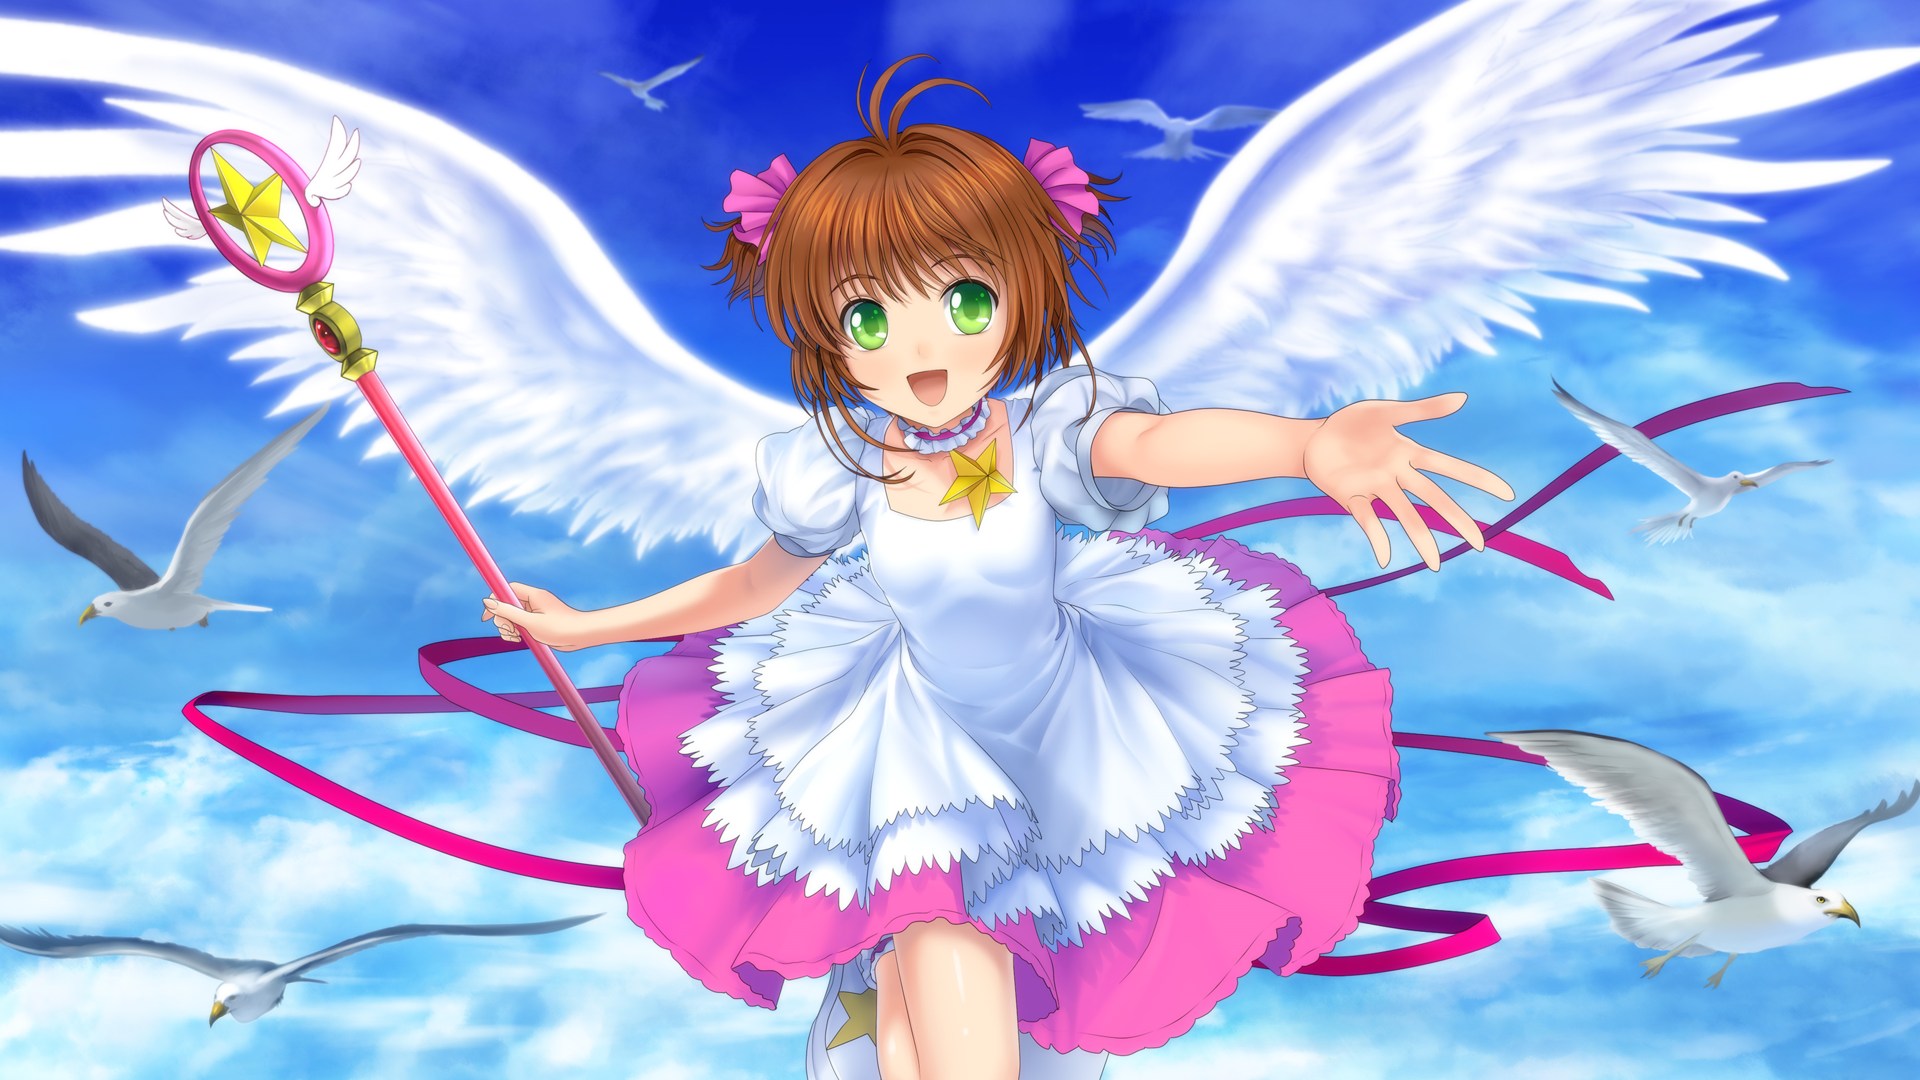 Hình nền Sakura chibi: Sakura chibi là một trong những nhân vật chibi được yêu thích nhất của người hâm mộ anime. Hình nền Sakura chibi không chỉ dễ thương và ngộ nghĩnh mà còn rất độc đáo và phù hợp với mọi độ tuổi. Hãy cập nhật giao diện của mình với hình ảnh Sakura chibi đáng yêu này.